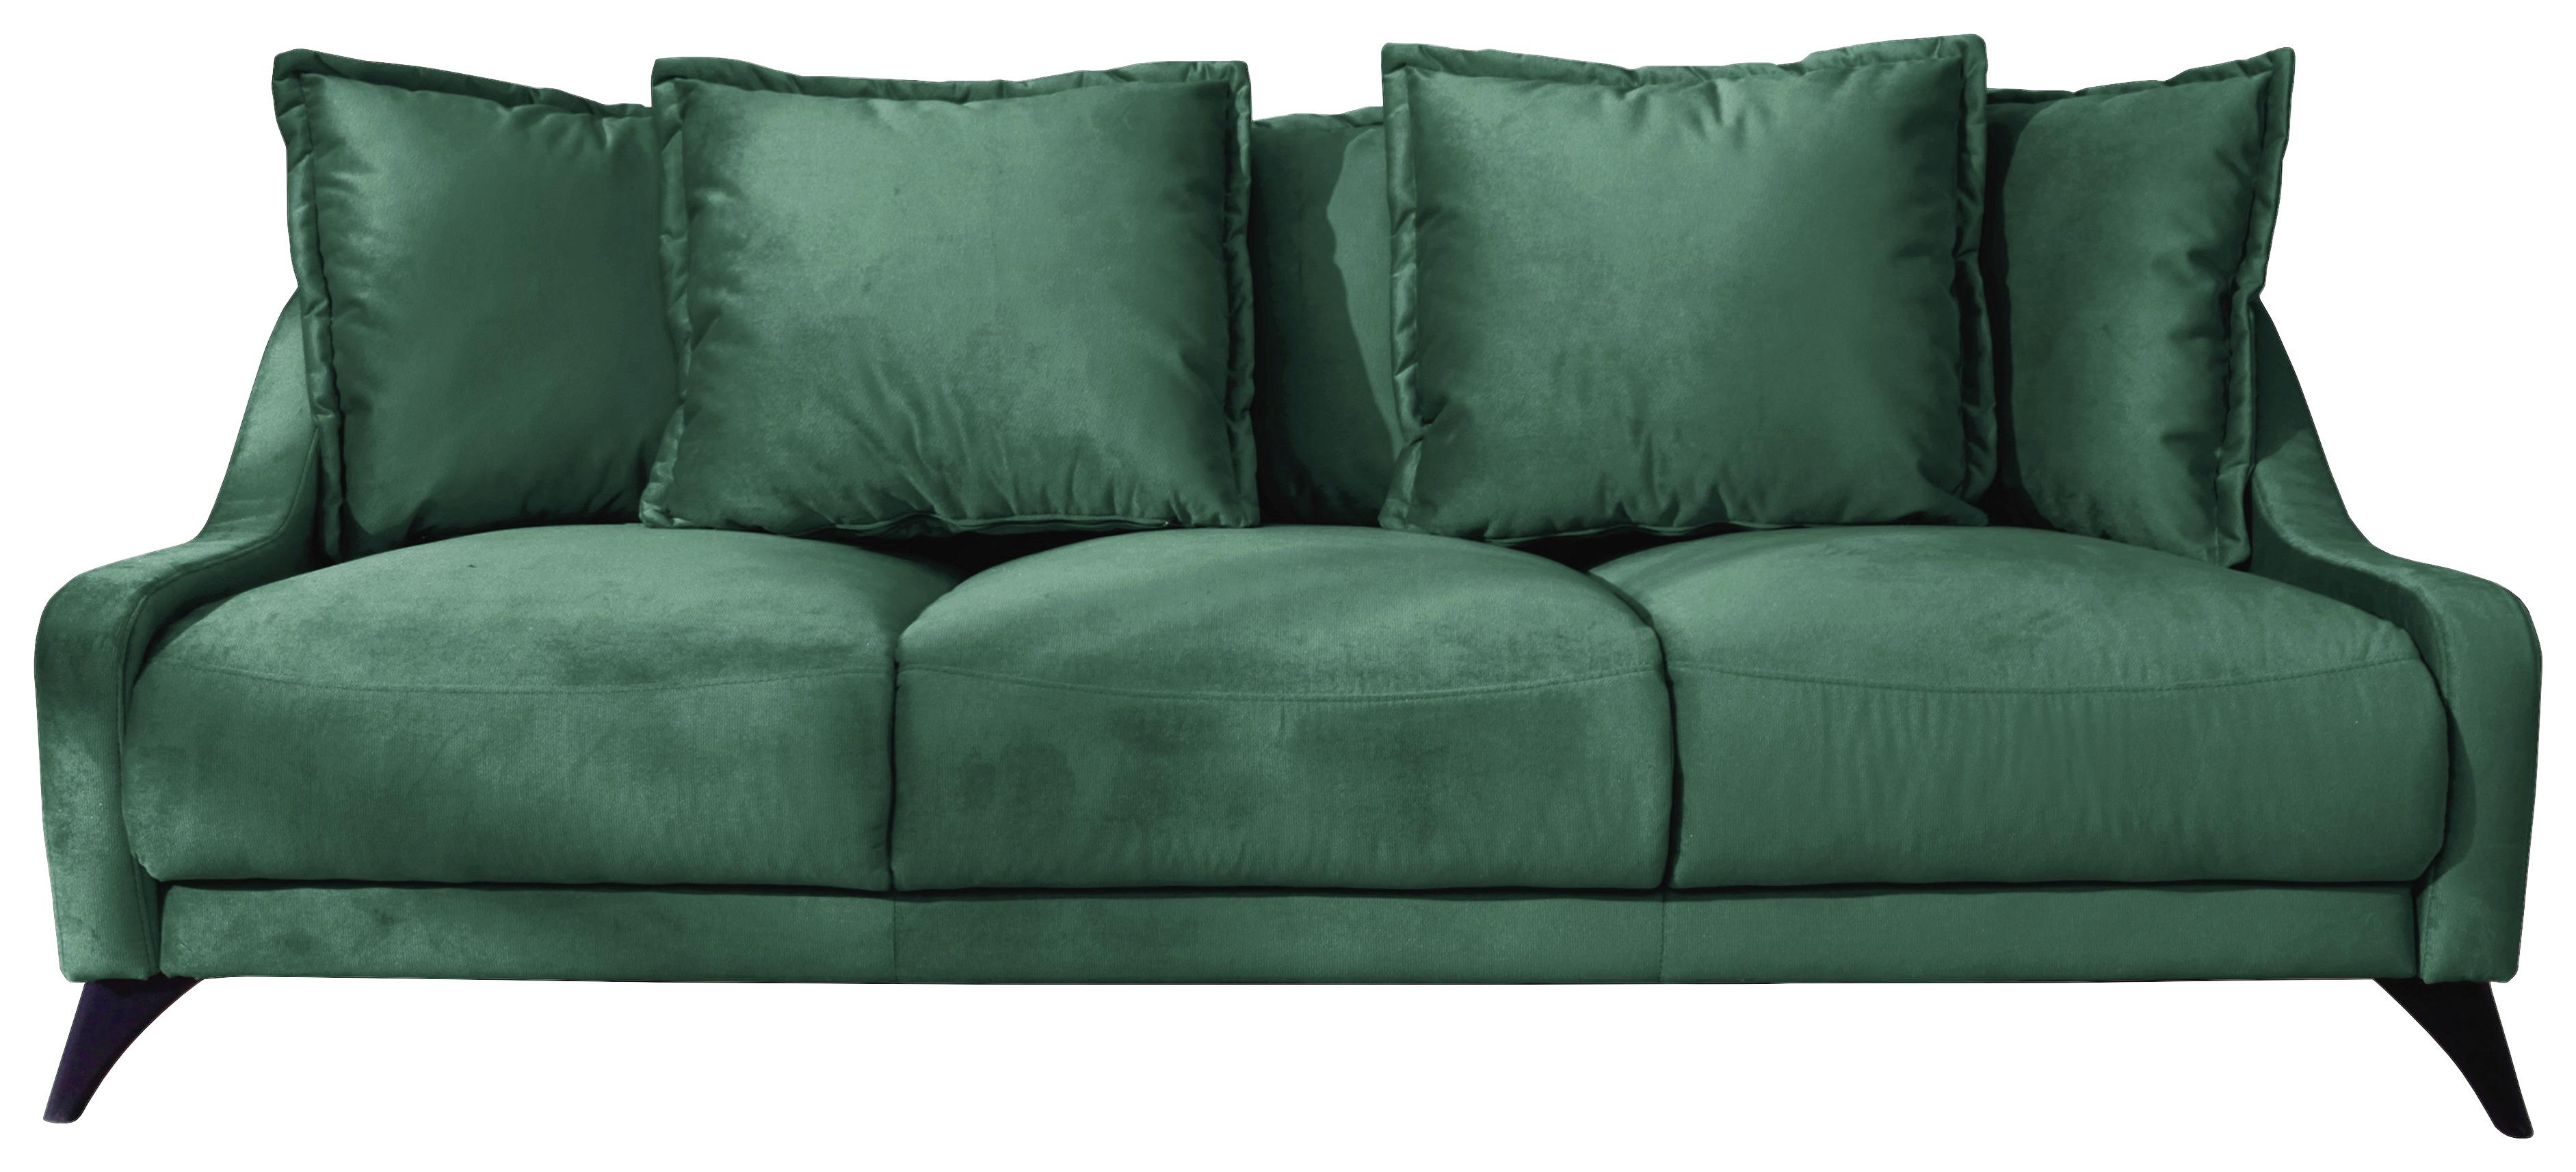 Dreisitzer-Sofa mit Kissen Royal Rose, Veloursbezug - Smaragdgrün/Schwarz, Basics, Textil (200/90/95cm) - MID.YOU